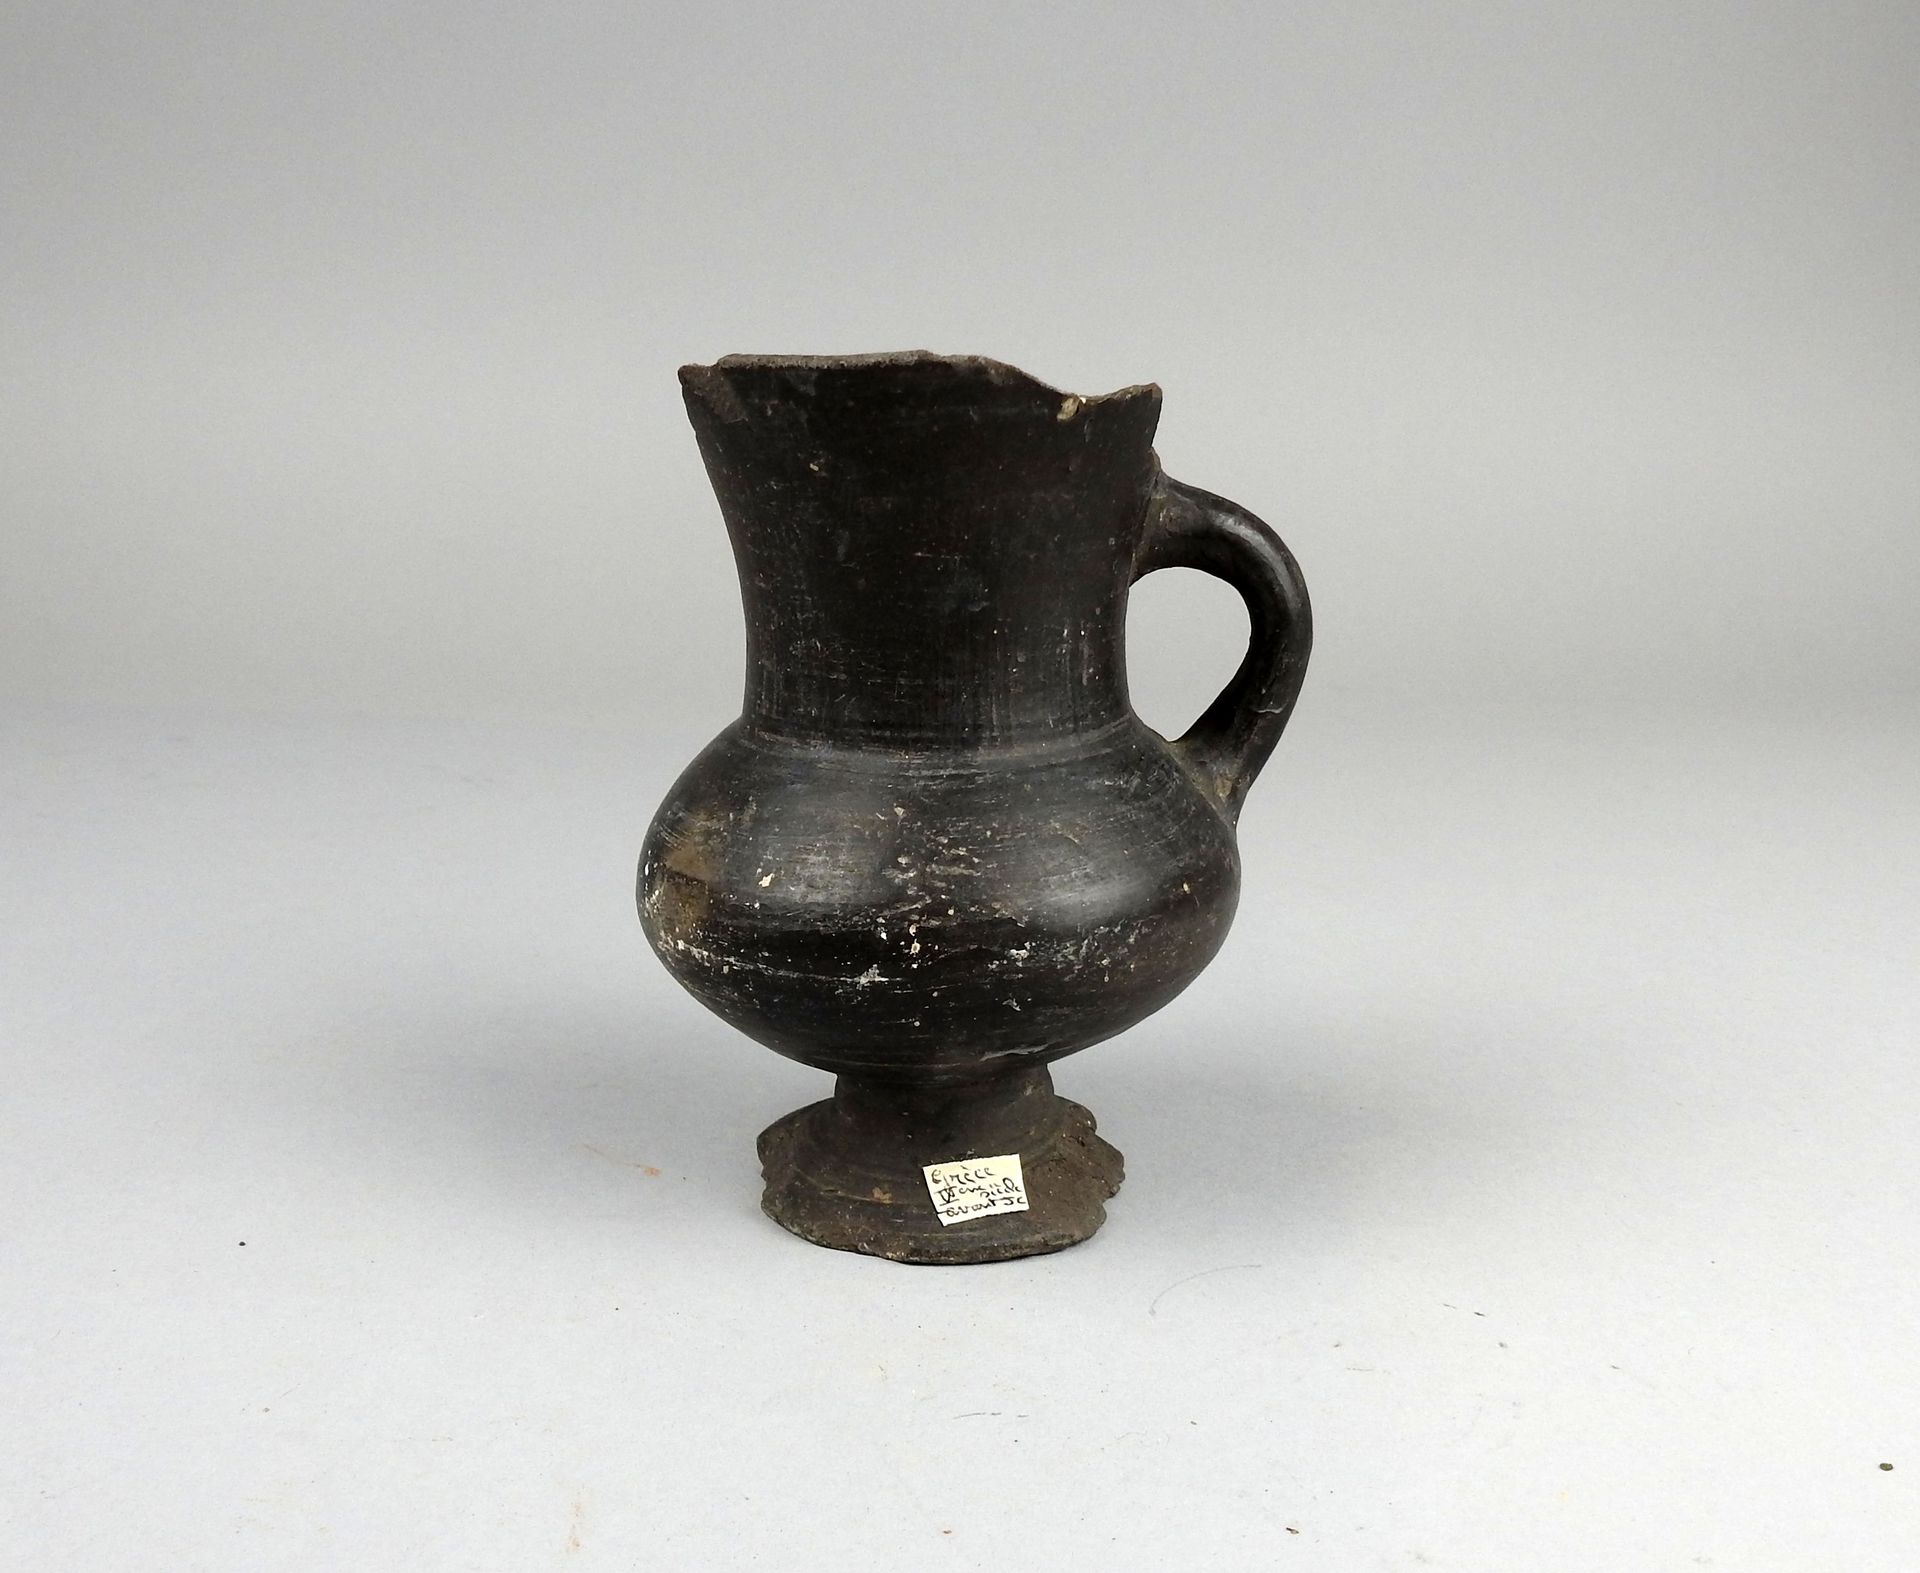 Null 带把手的水壶

黑色赤土11.5厘米的修复物

公元前5世纪的大格拉西亚